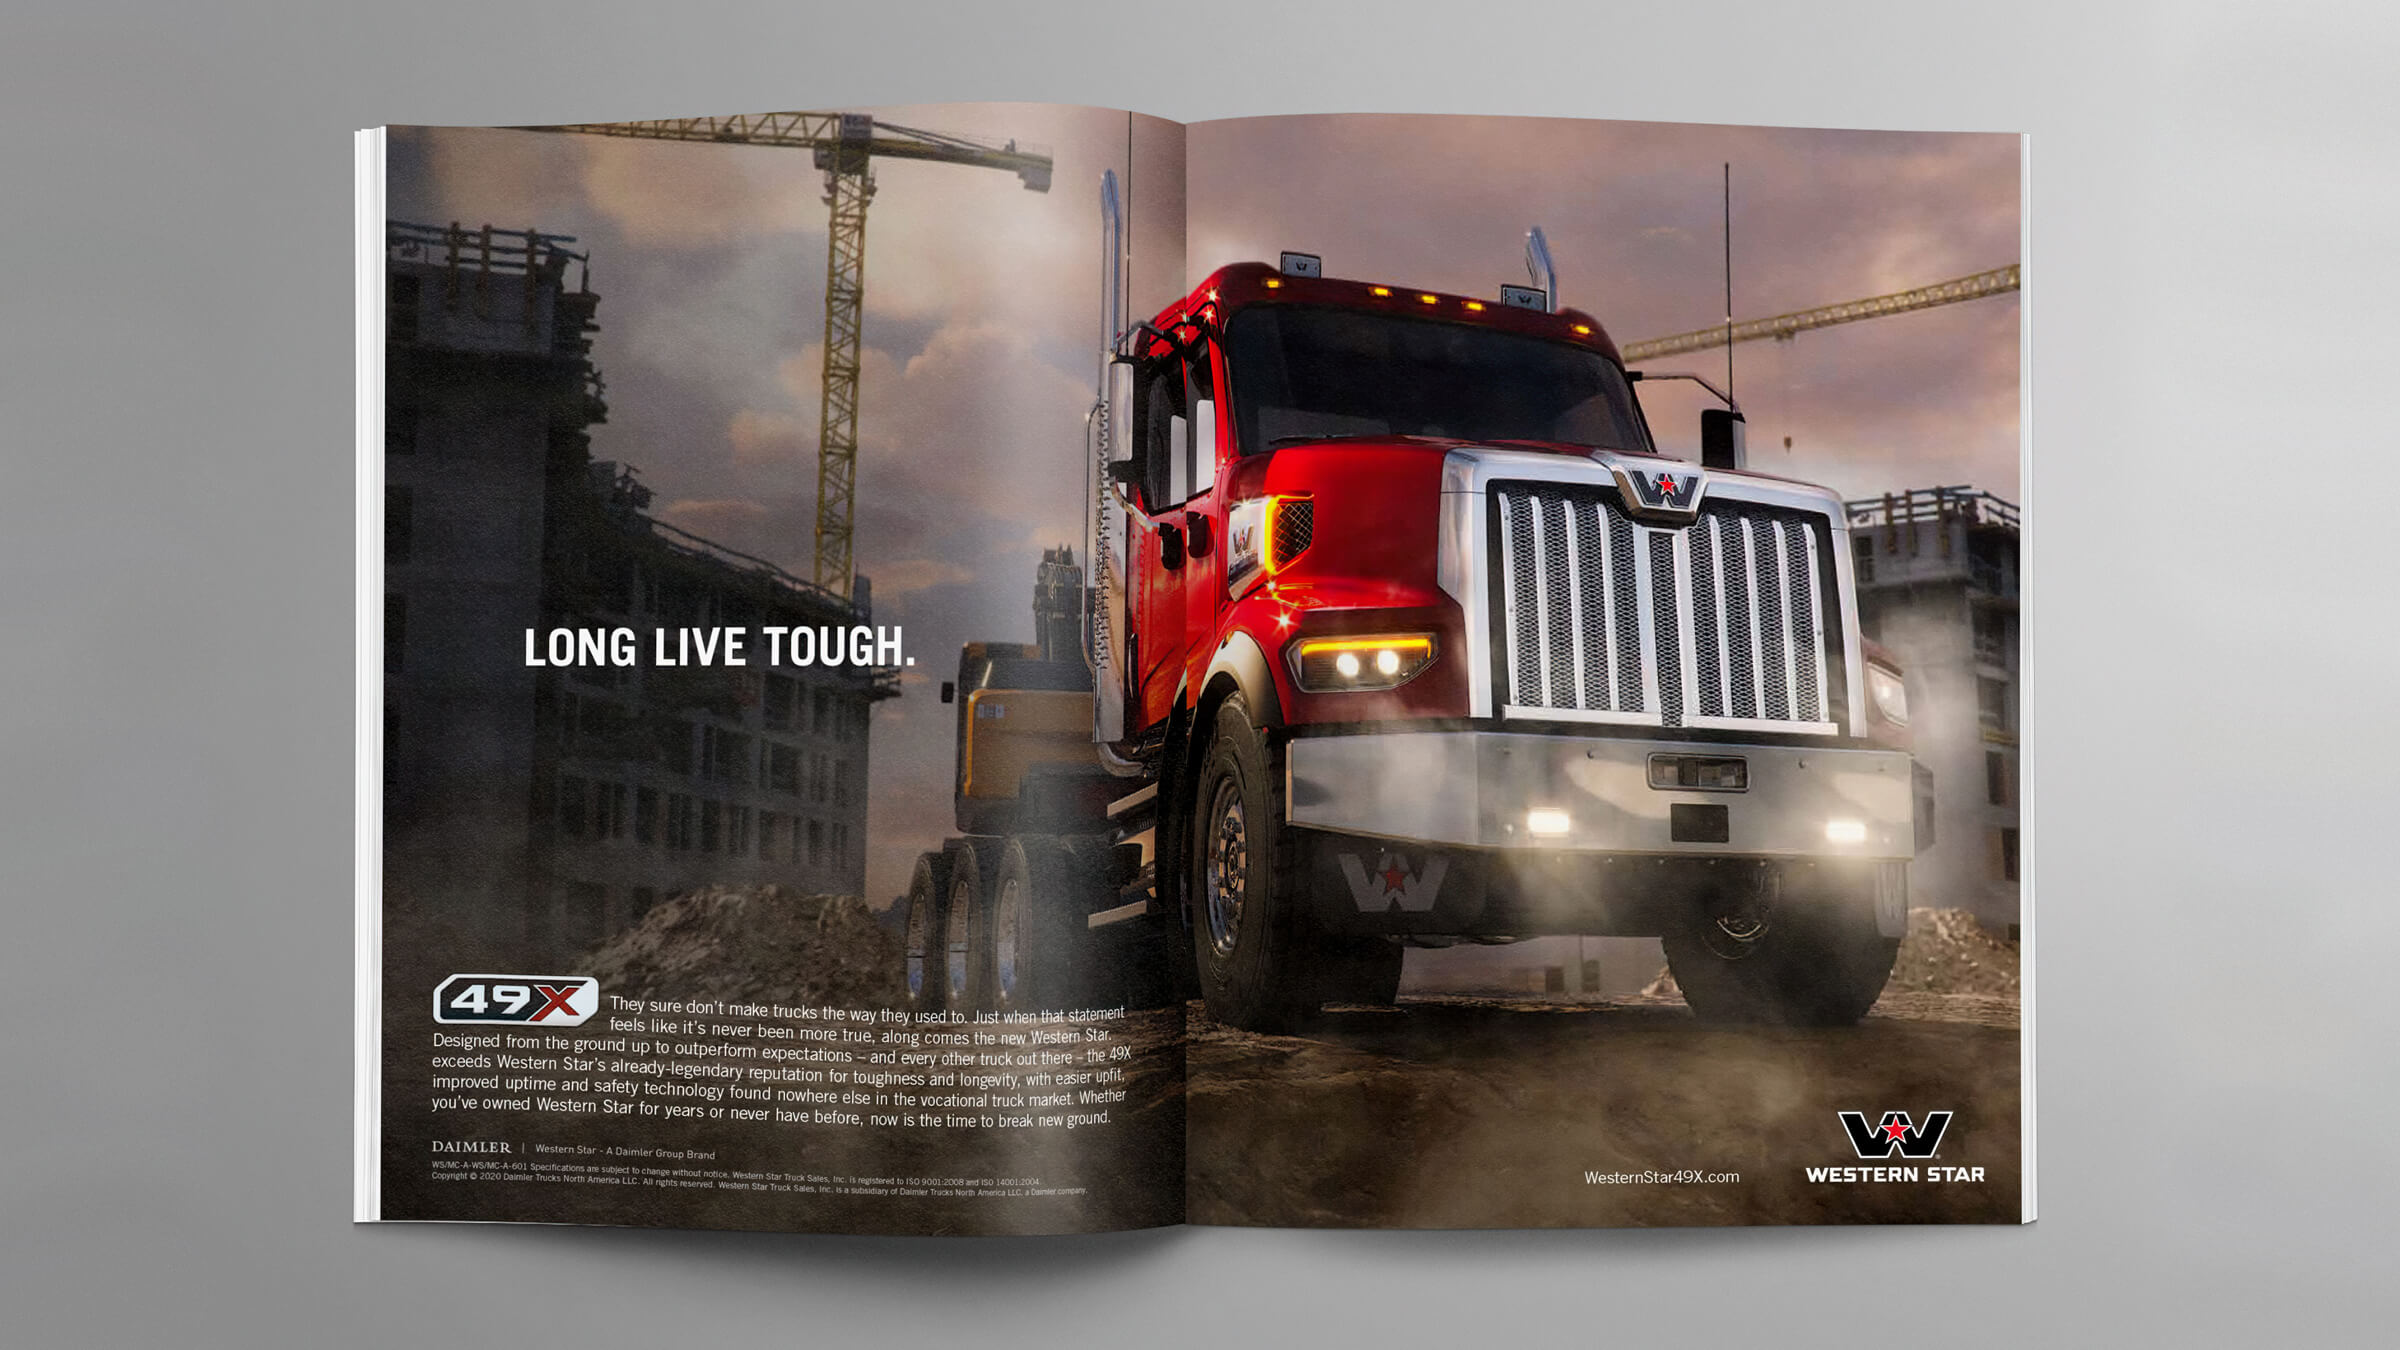 Western Star Trucks 49x launch magazine ad spread